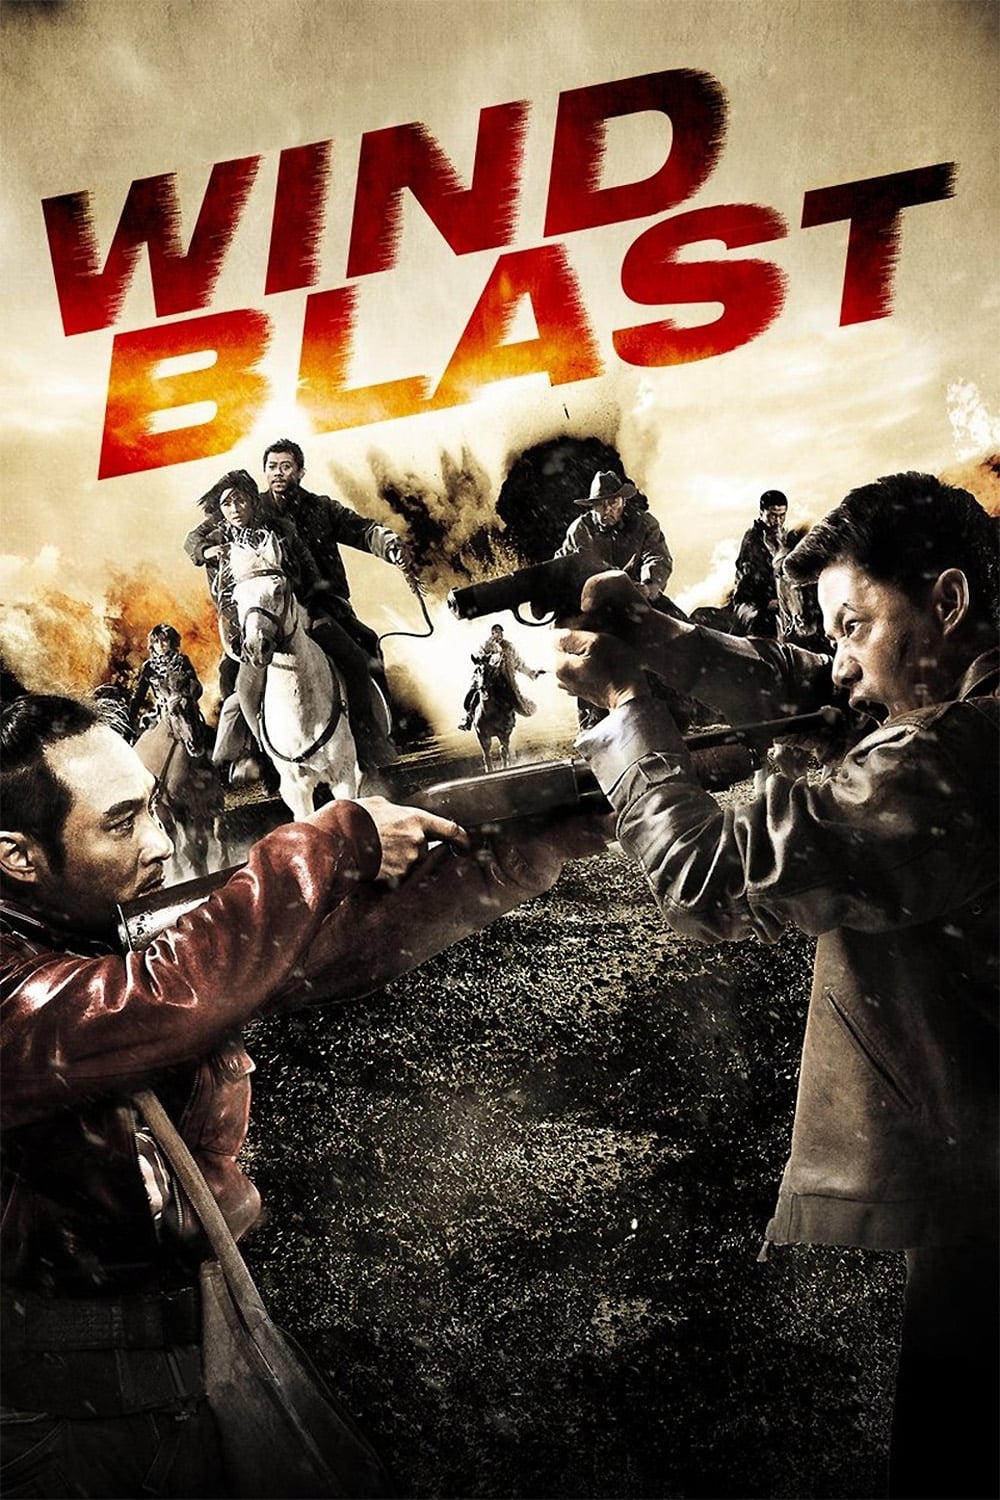 Wind Blast (2010)